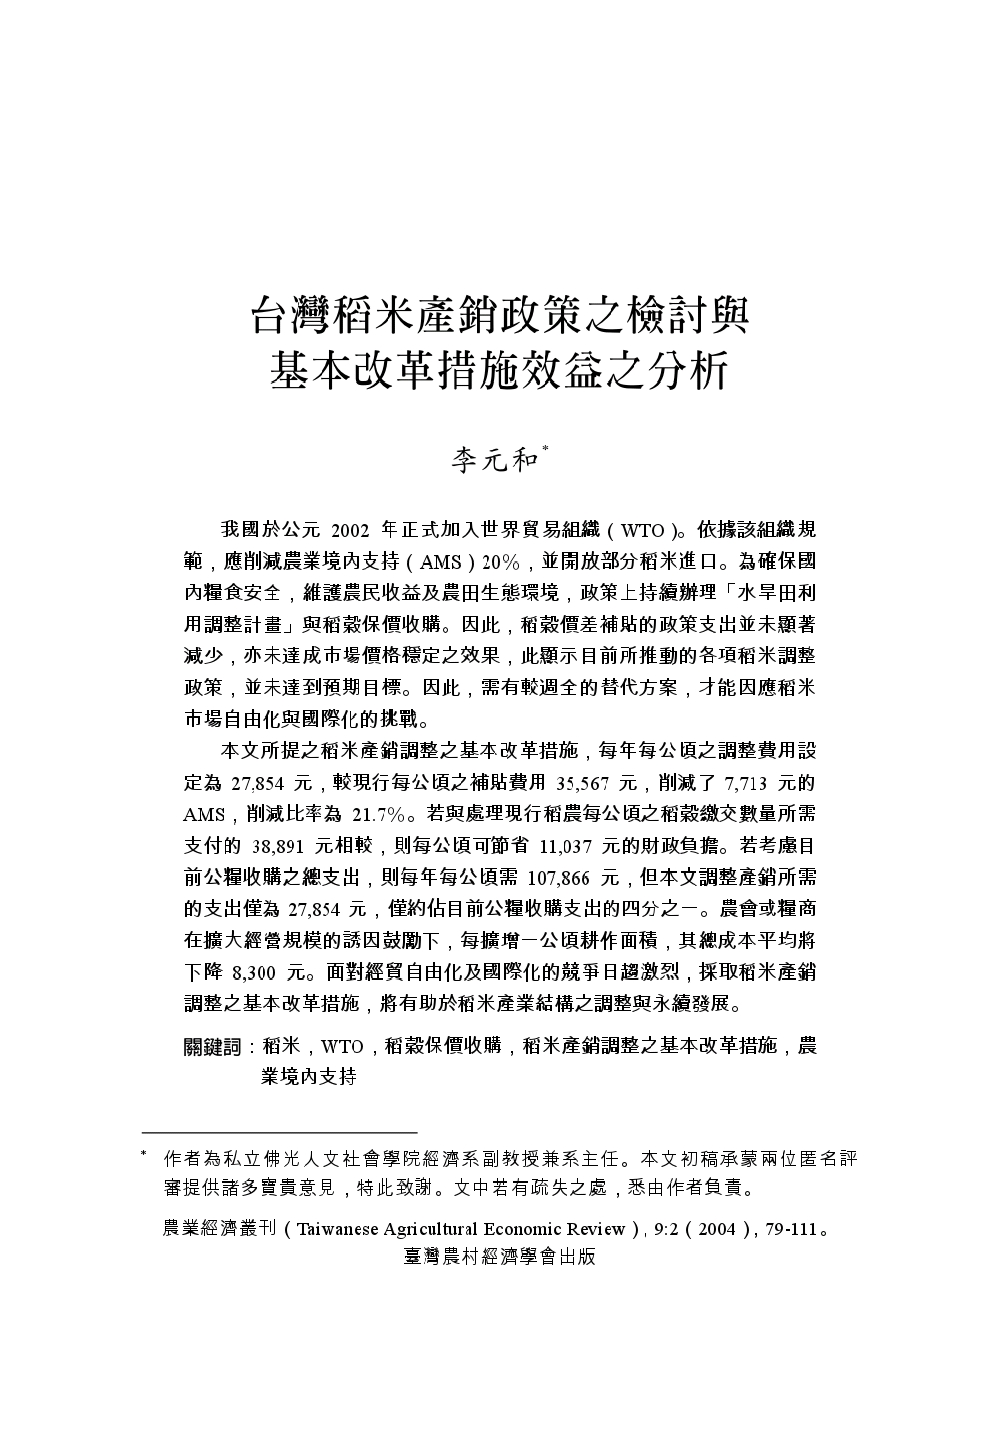 台灣稻米產銷政策之檢討與基本改革措施效益之分析.jpg